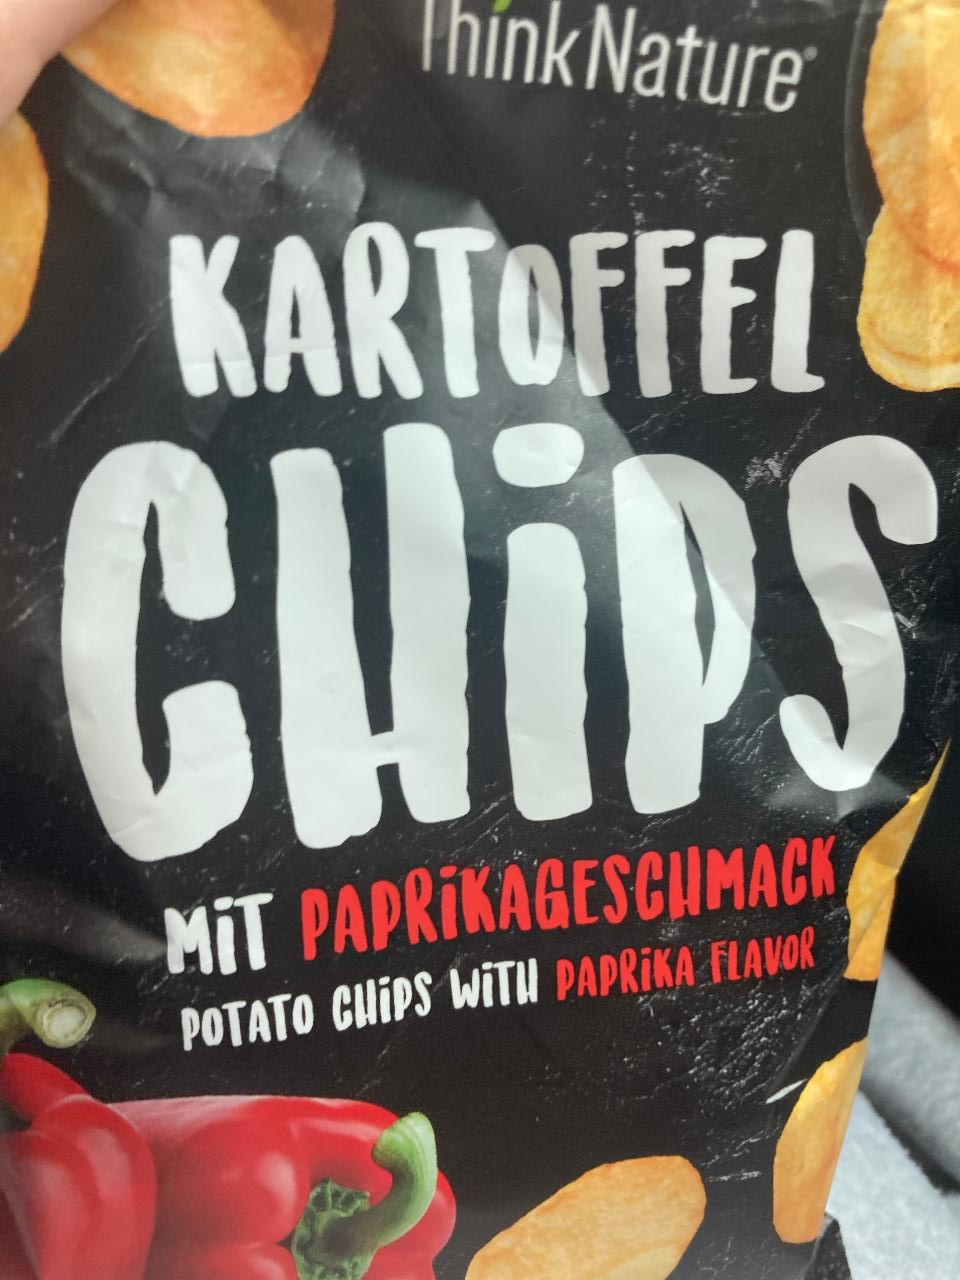 Fotografie - Kartoffel chips mit paprikageschmack Think Nature